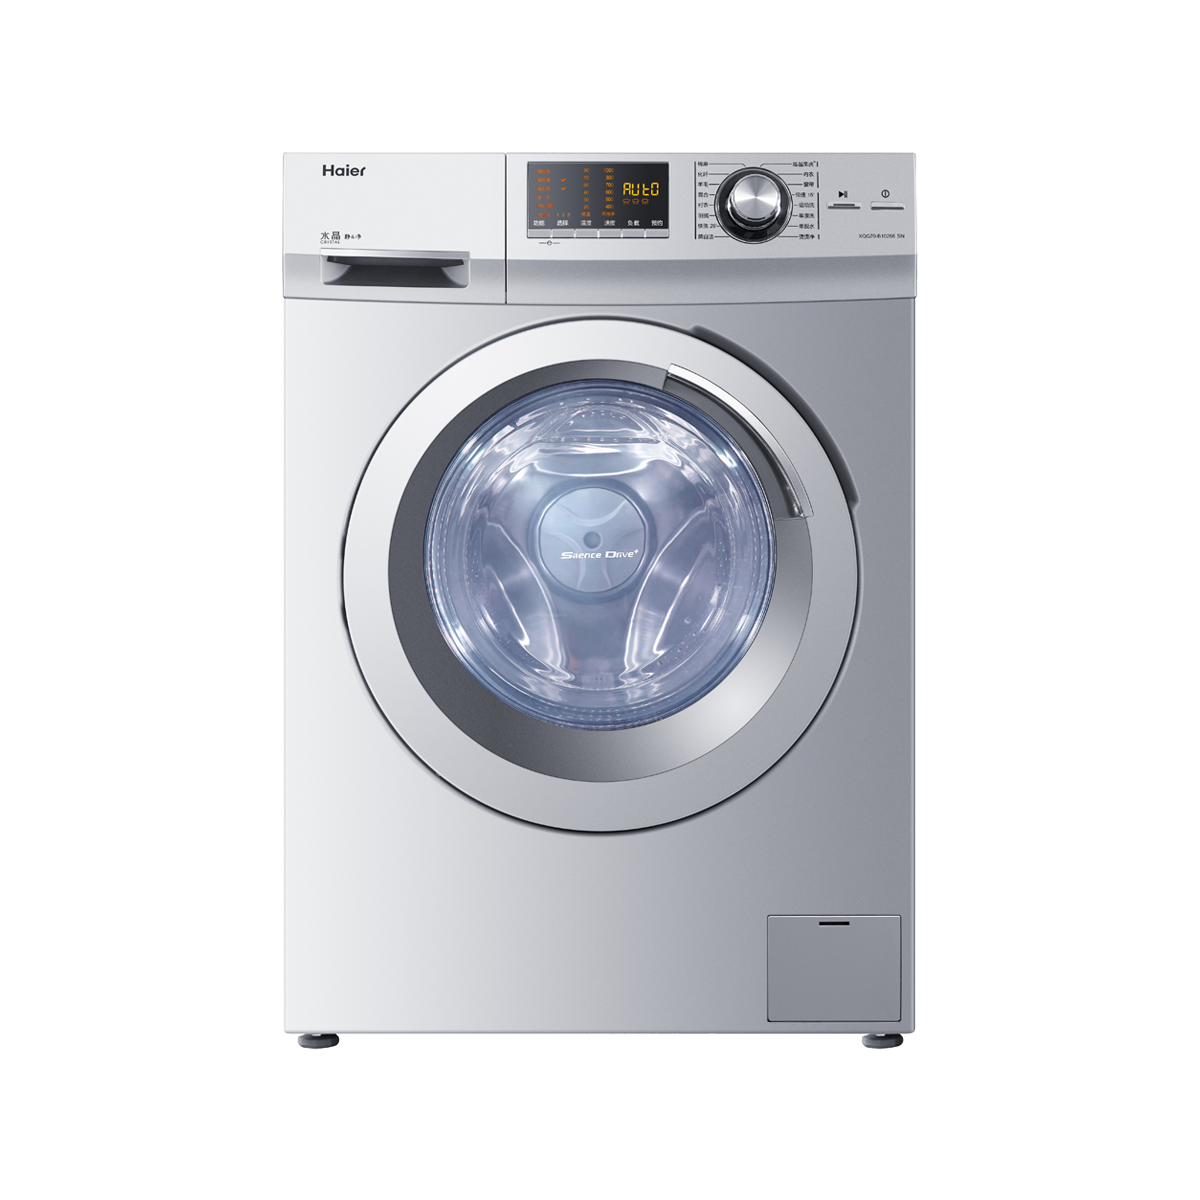 海尔Haier洗衣机 XQG70-B10266(SN) 说明书